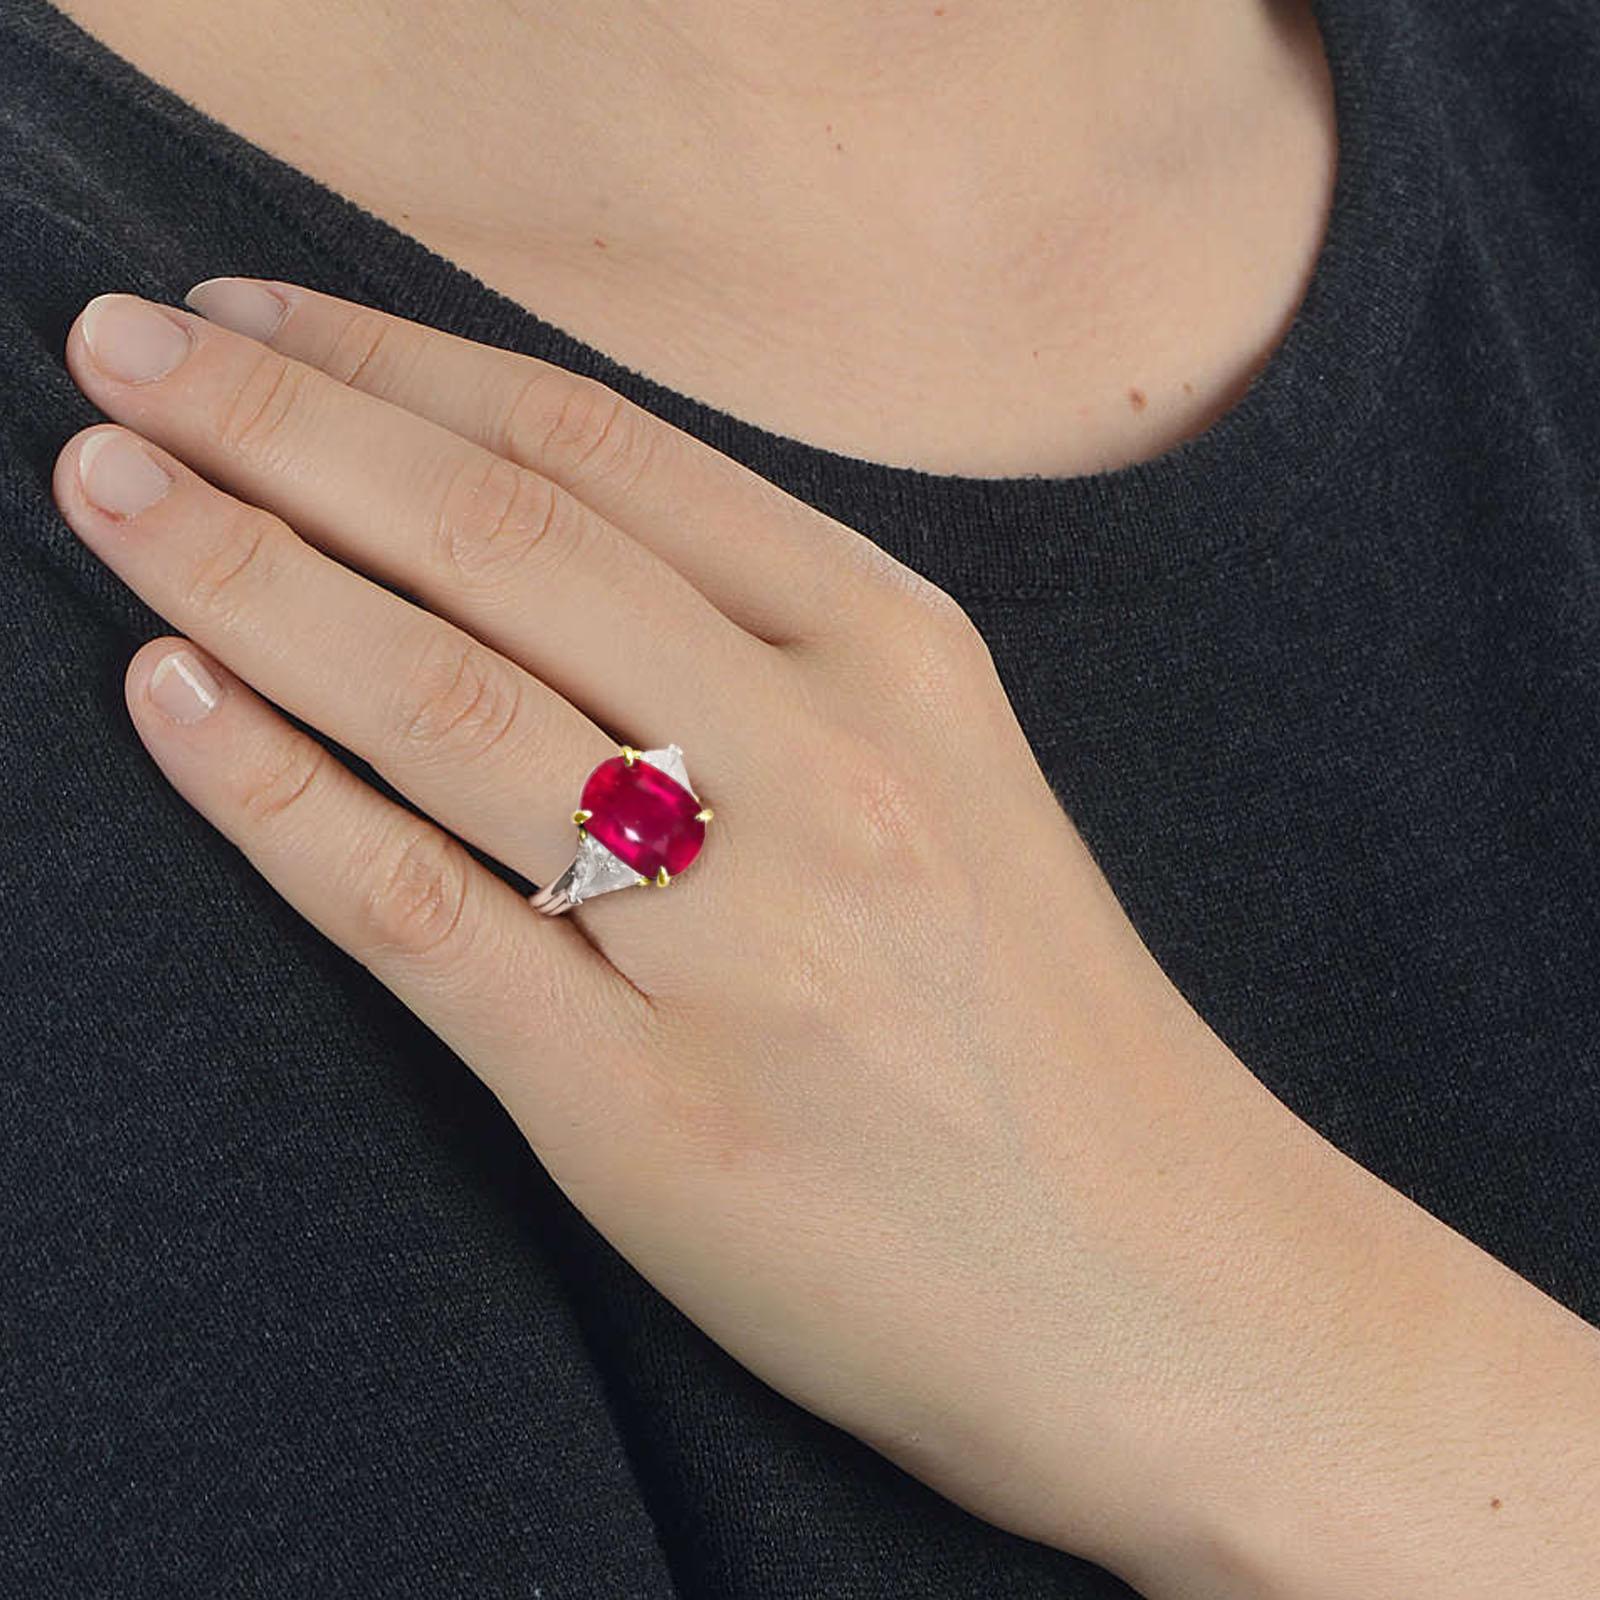 Ein STUNNING roter Rubin-Diamant-Ring!

GRS-zertifizierter Diamantring mit 6.72 Karat natürlichem, unbehandeltem, unbehandeltem rotem Rubin

.60 Karat weiße Diamanten an der Seite.

Maßgeschneiderte Fassung aus Platin und 18 Karat Gelbgold.

Größe